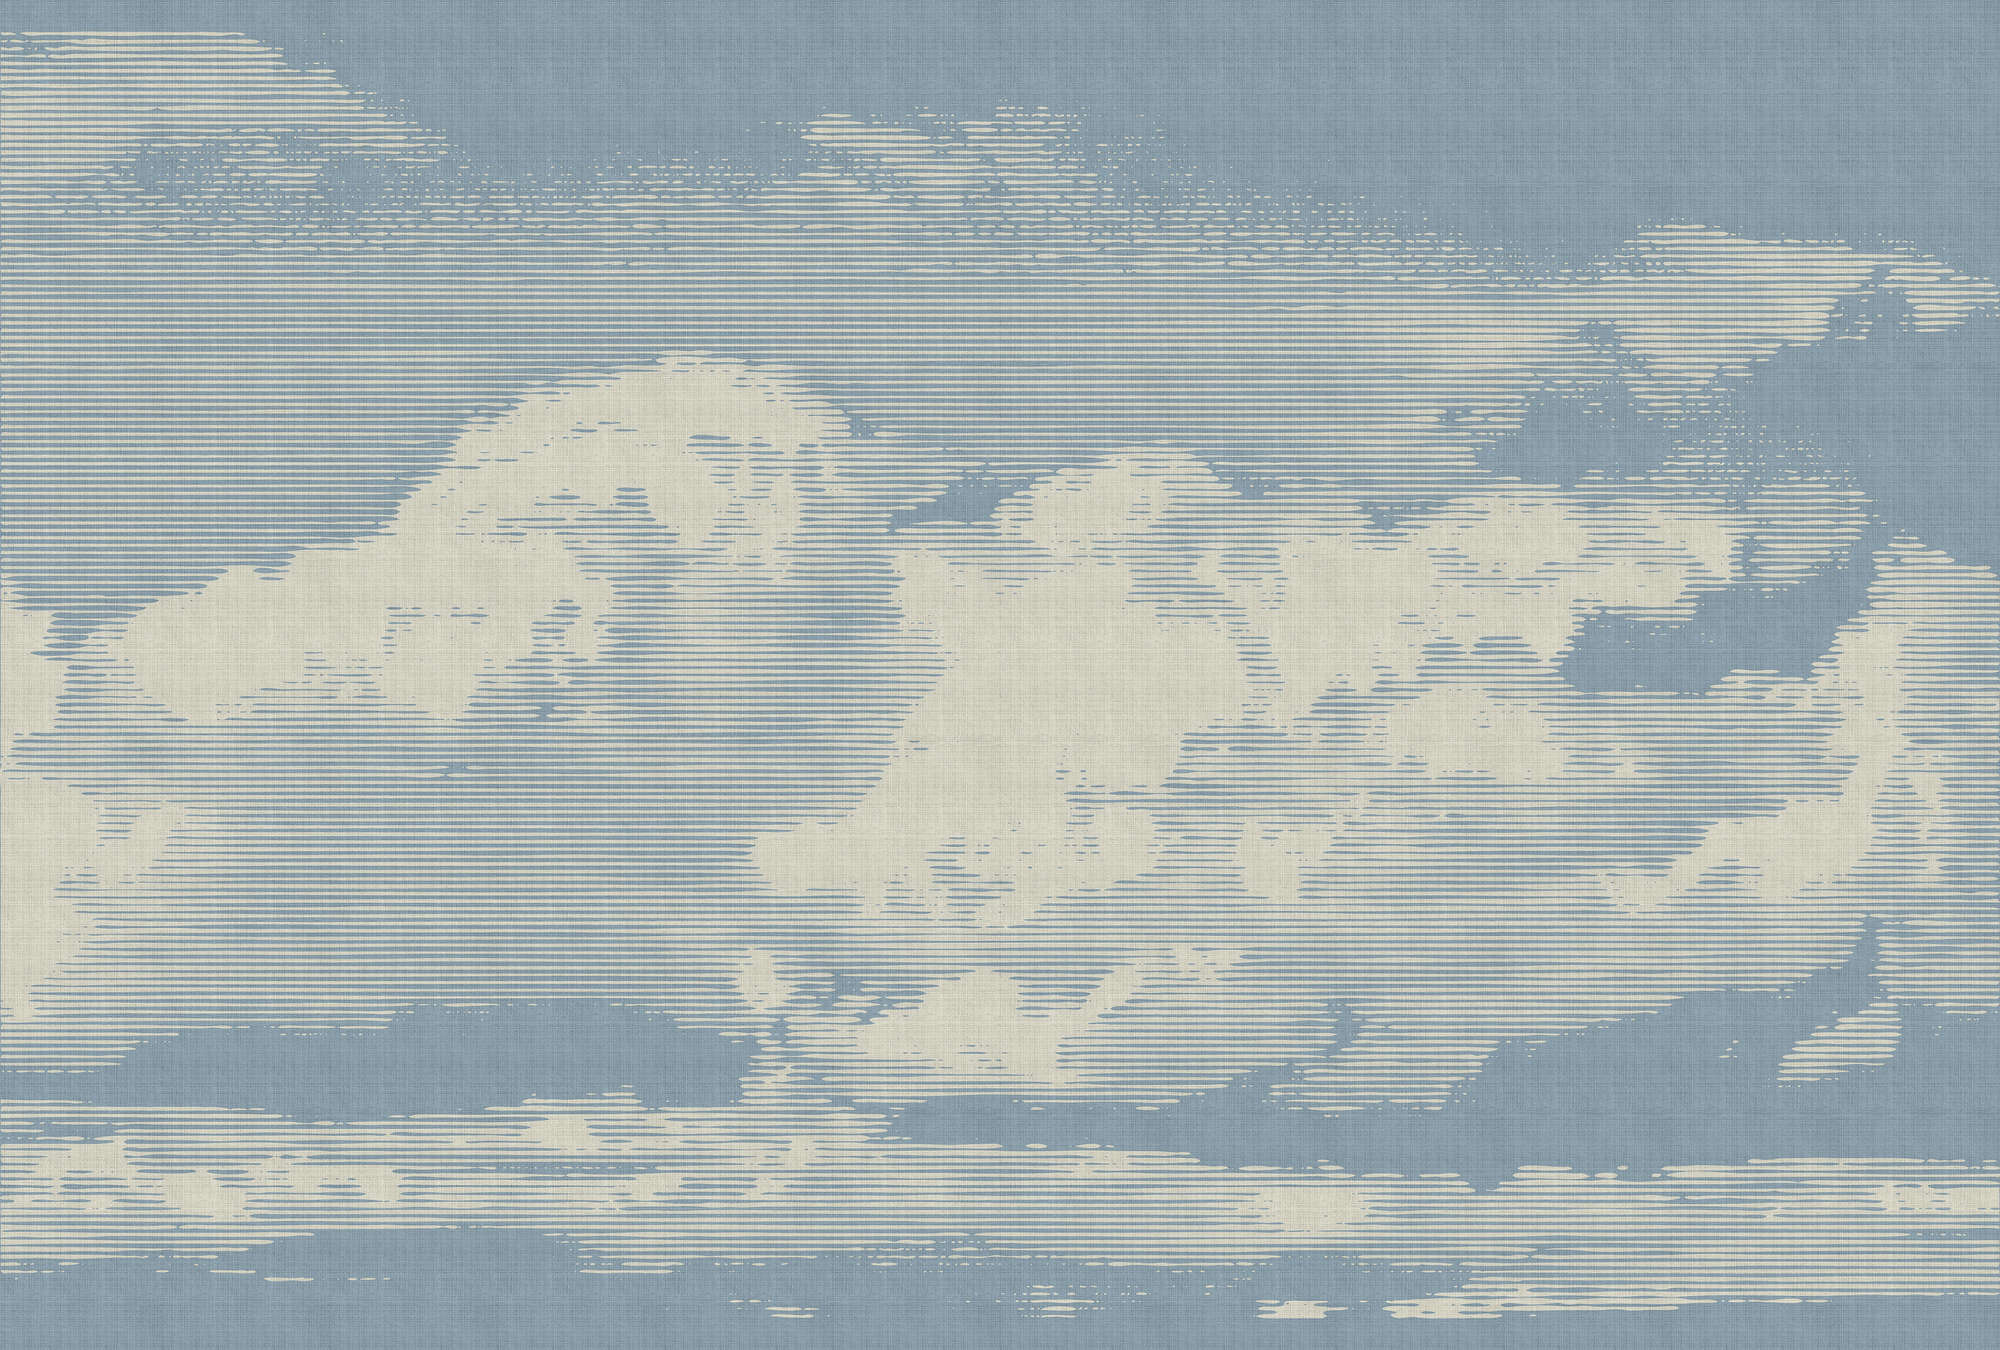             Clouds 1 - Hemels fotobehang met wolkenmotief in natuurlijke linnenstructuur - Beige, Blauw | Strukturenvlieseline
        